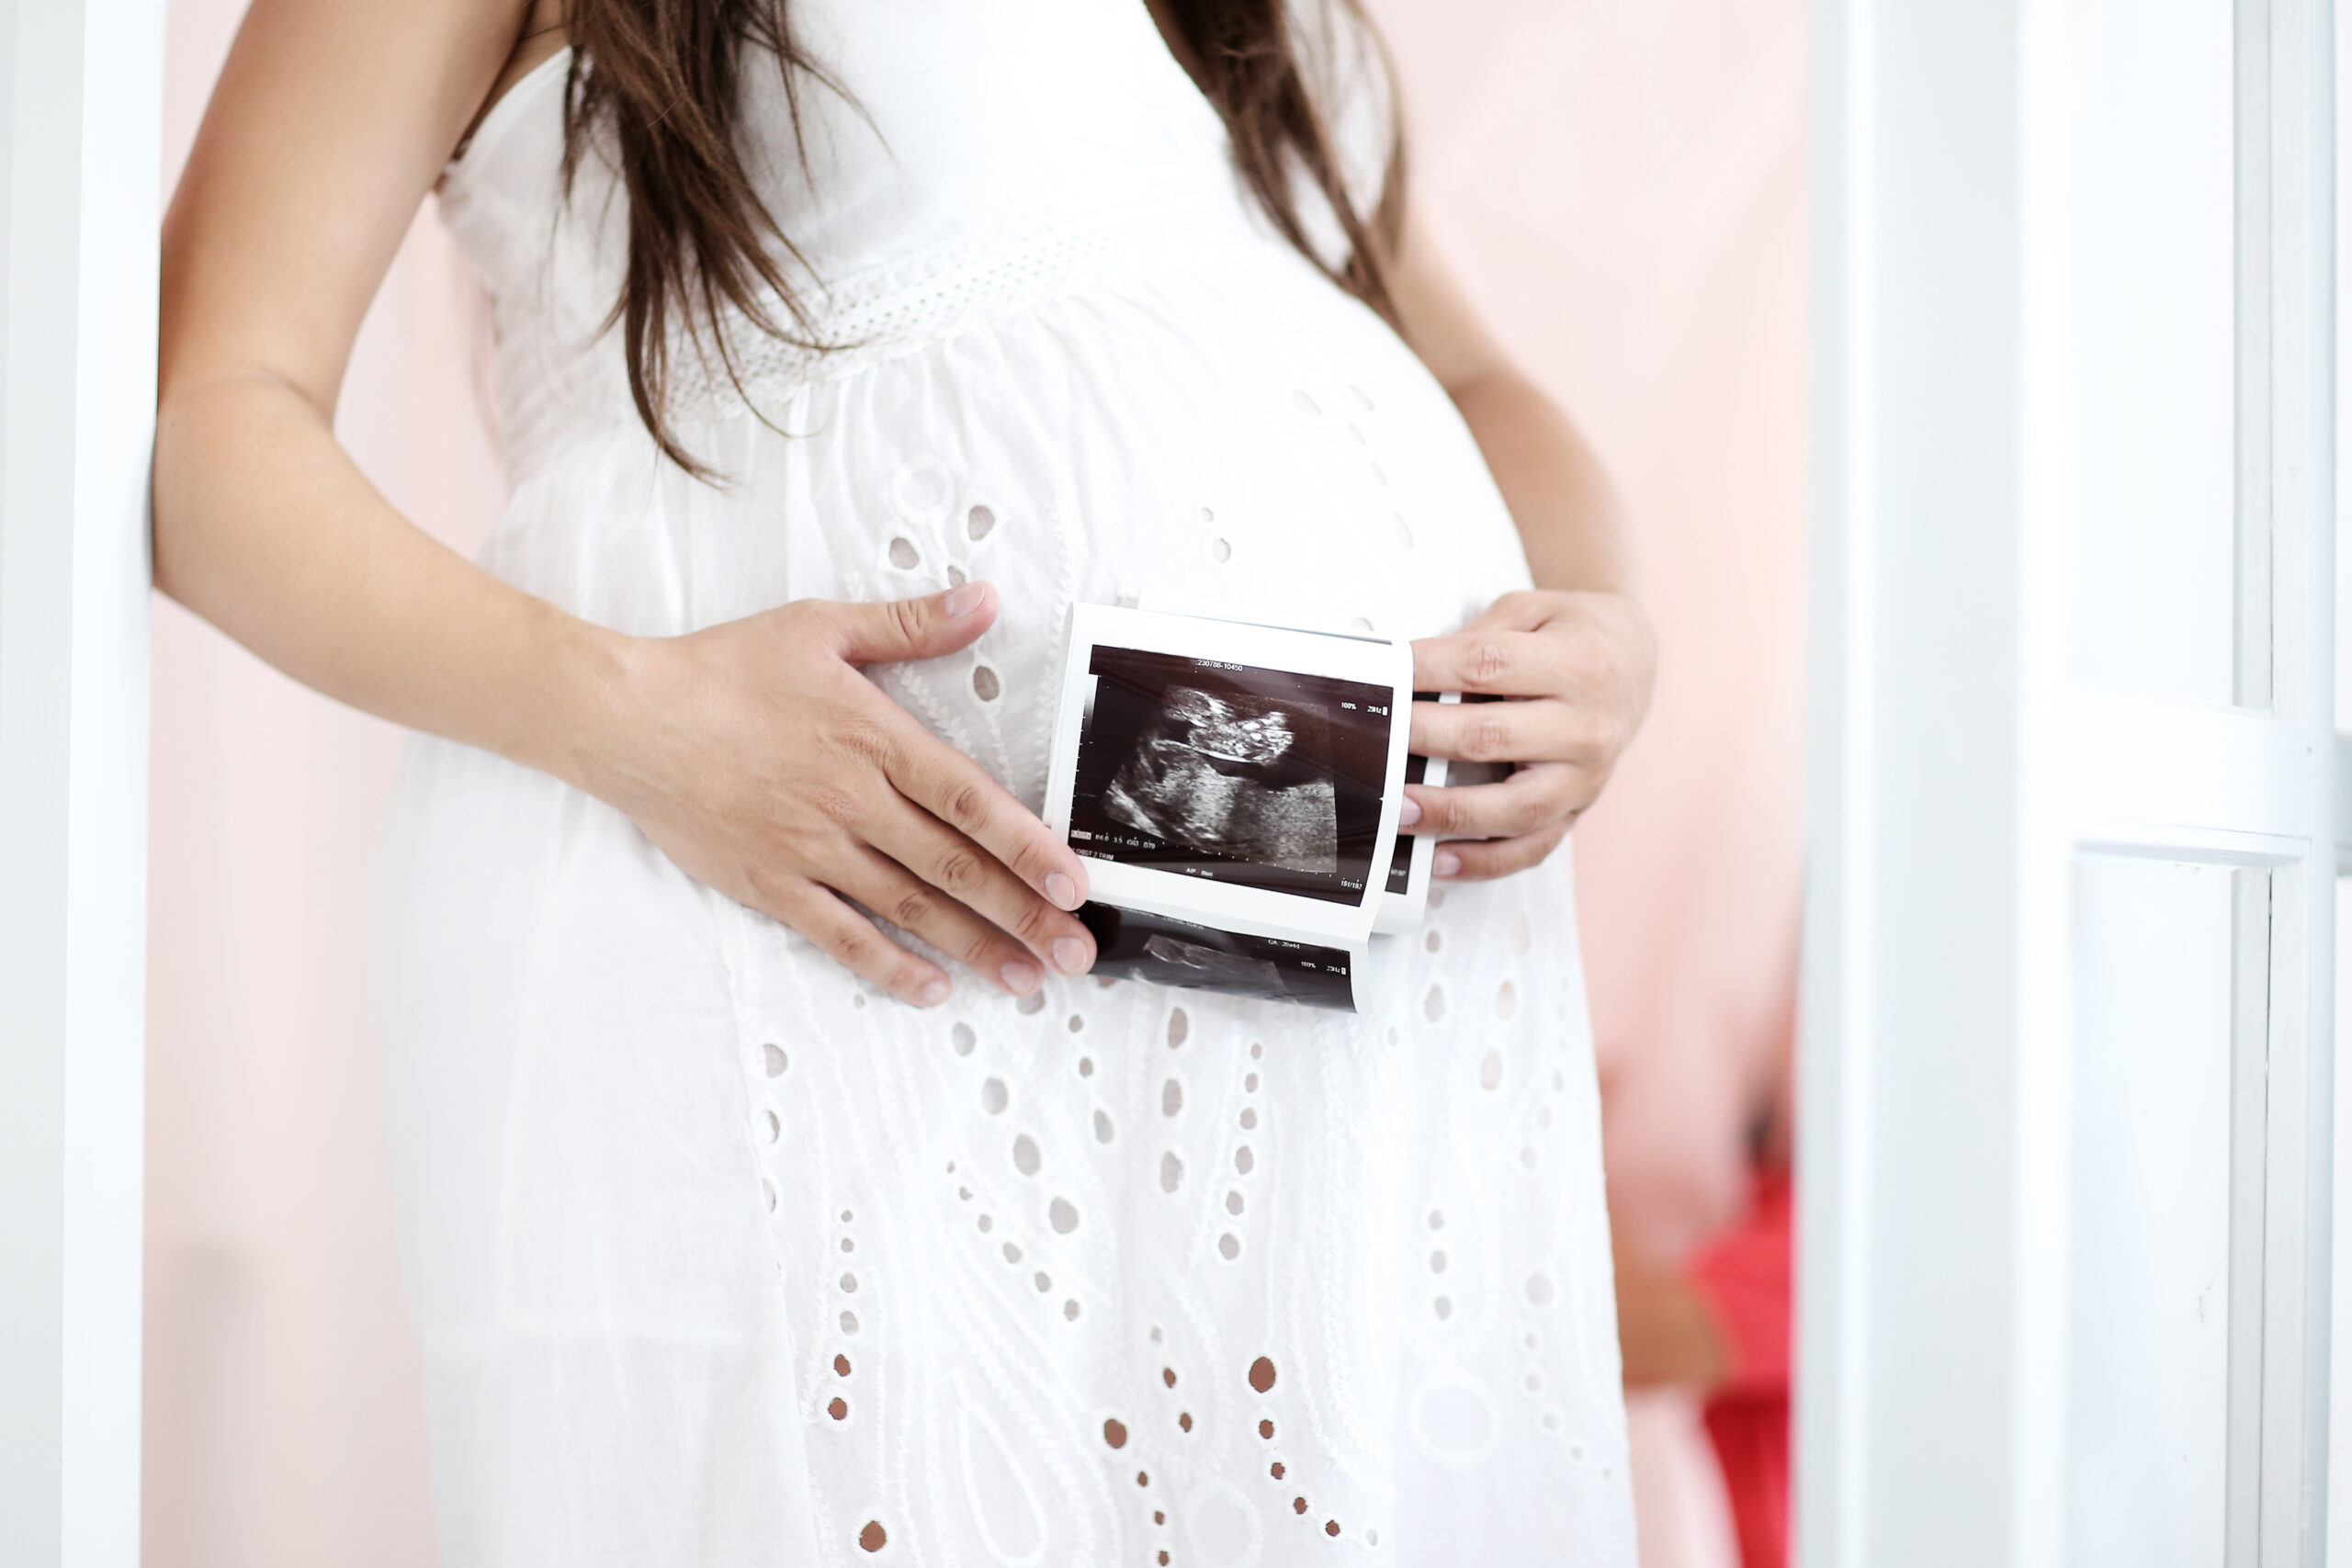 Legalização do aborto: O que você precisa saber como católico